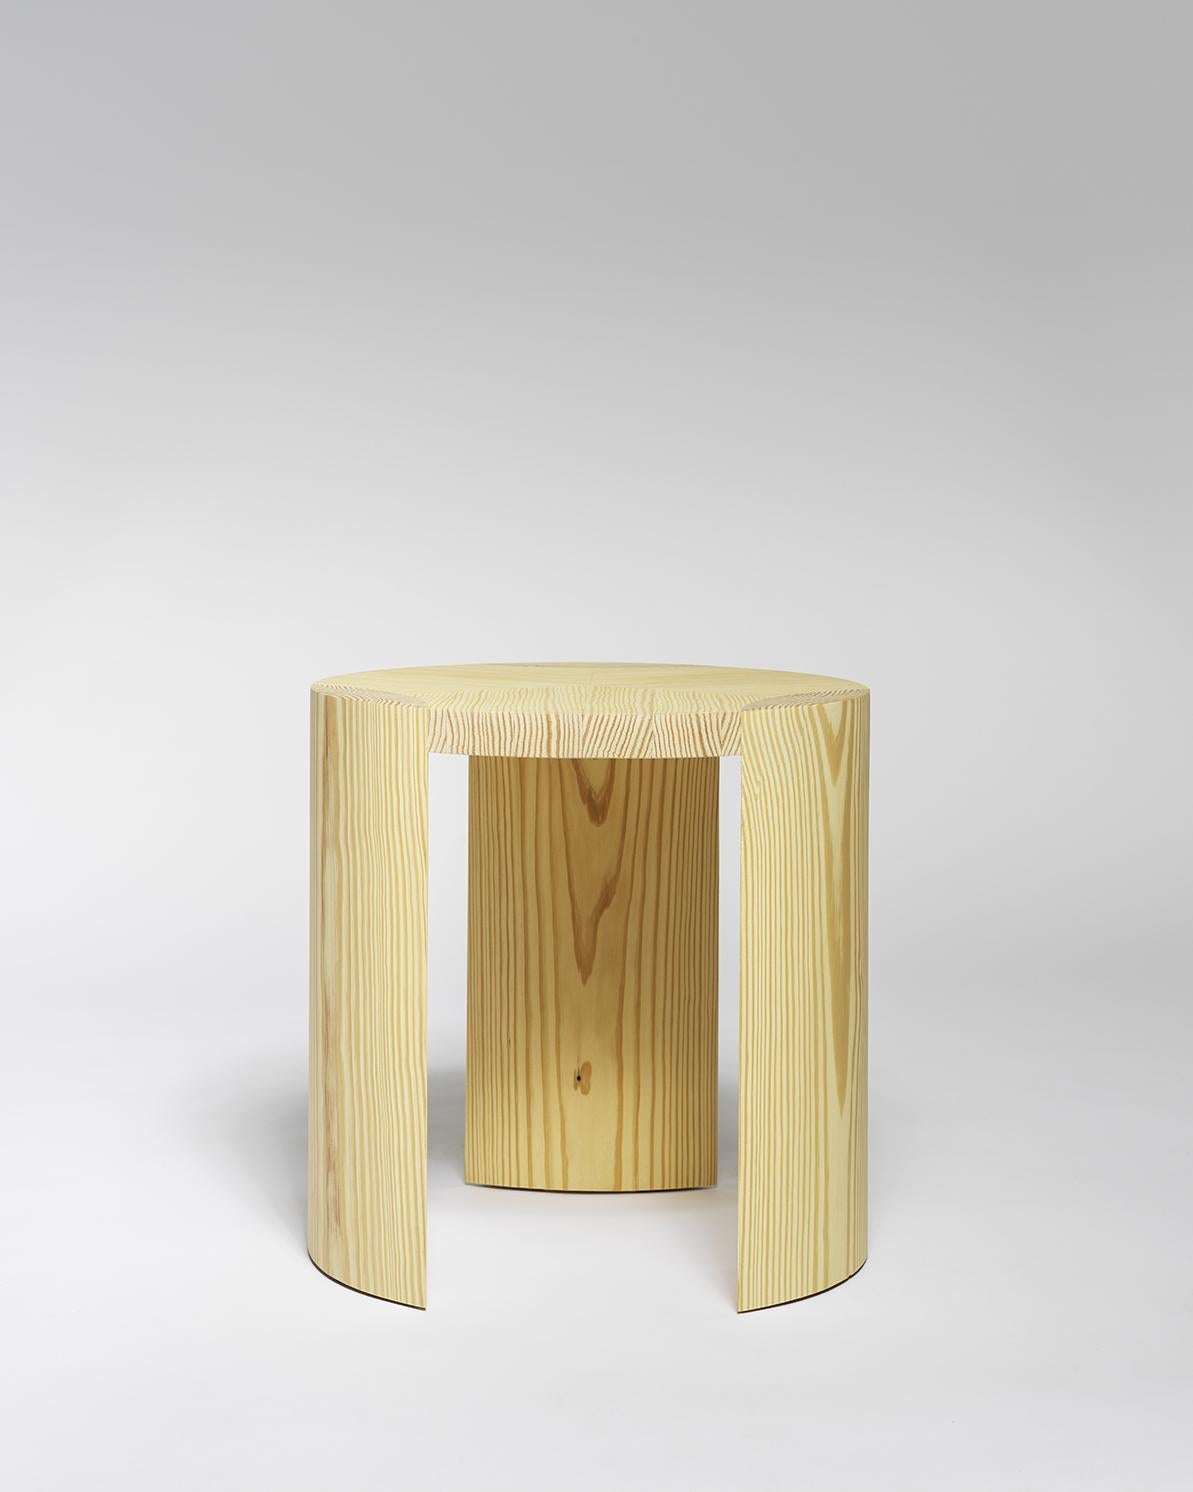 Une série de tables basses rondes dont la sobriété, le grain du bois et la jonction entre le pied et le plateau déterminent la forme et les détails.

Ces tables basses sont disponibles en deux matériaux différents. Un chêne de couleur bleutée et